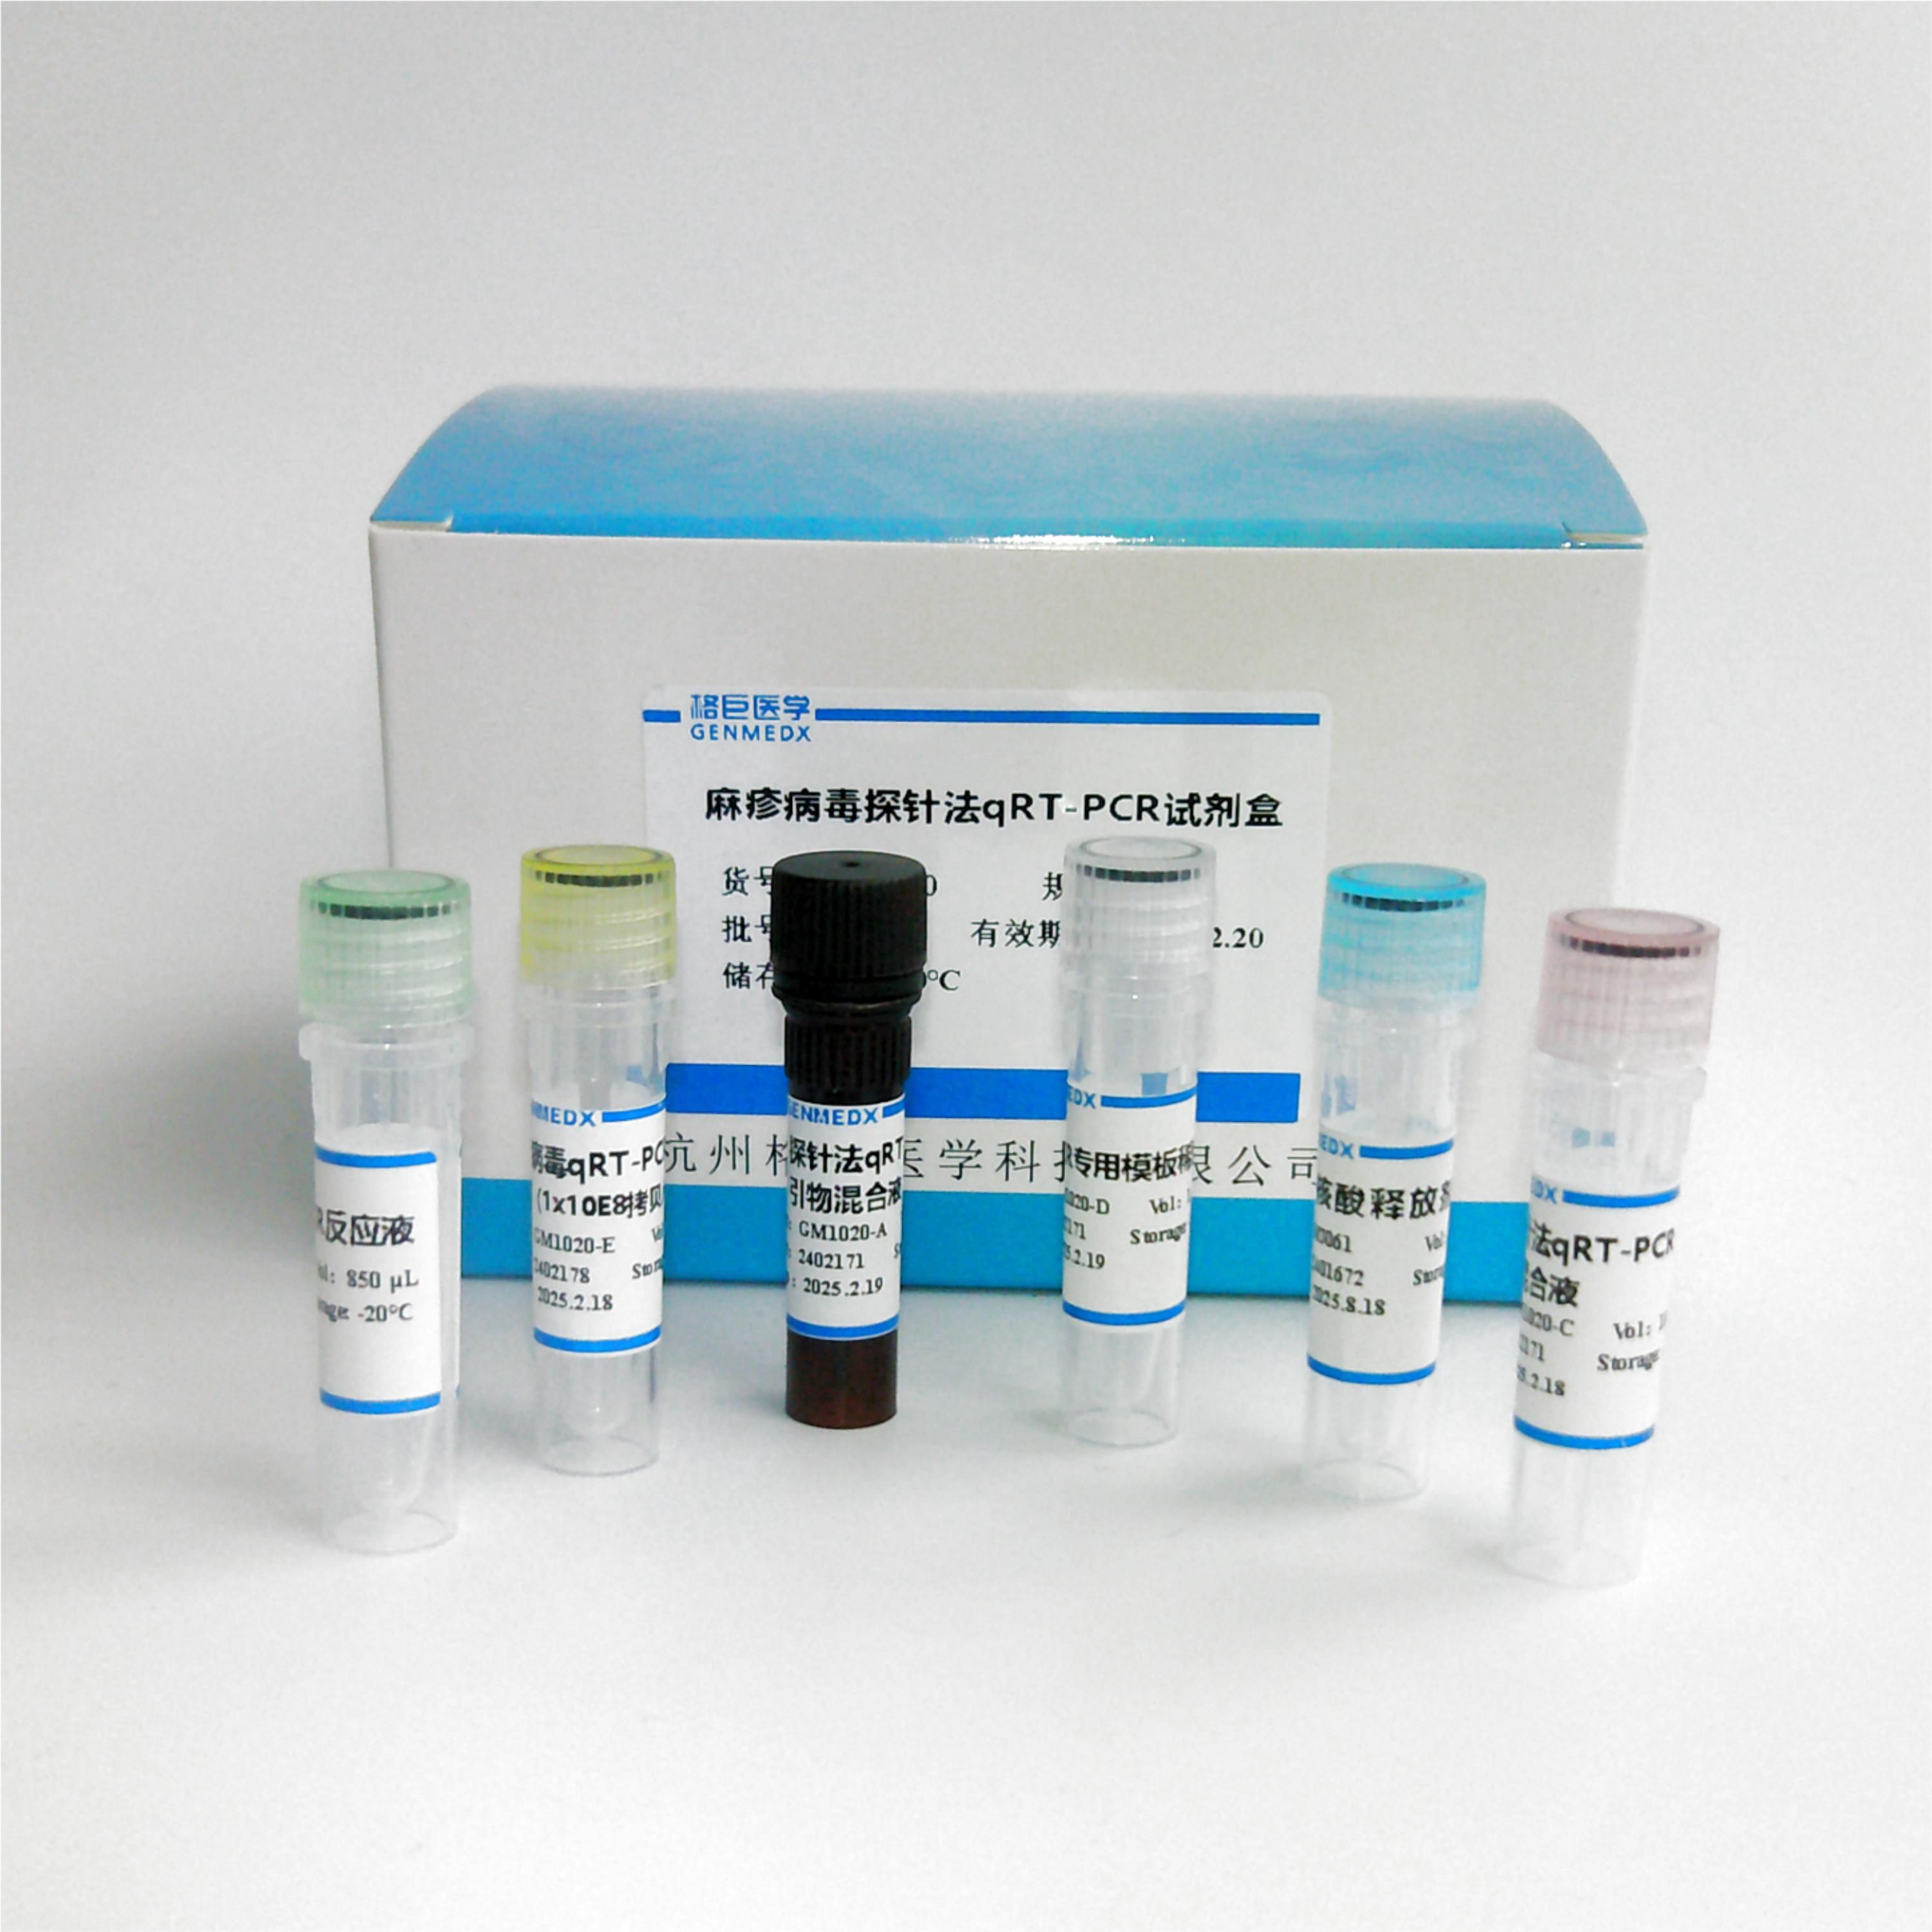 粘质沙雷菌探针法荧光定量PCR试剂盒